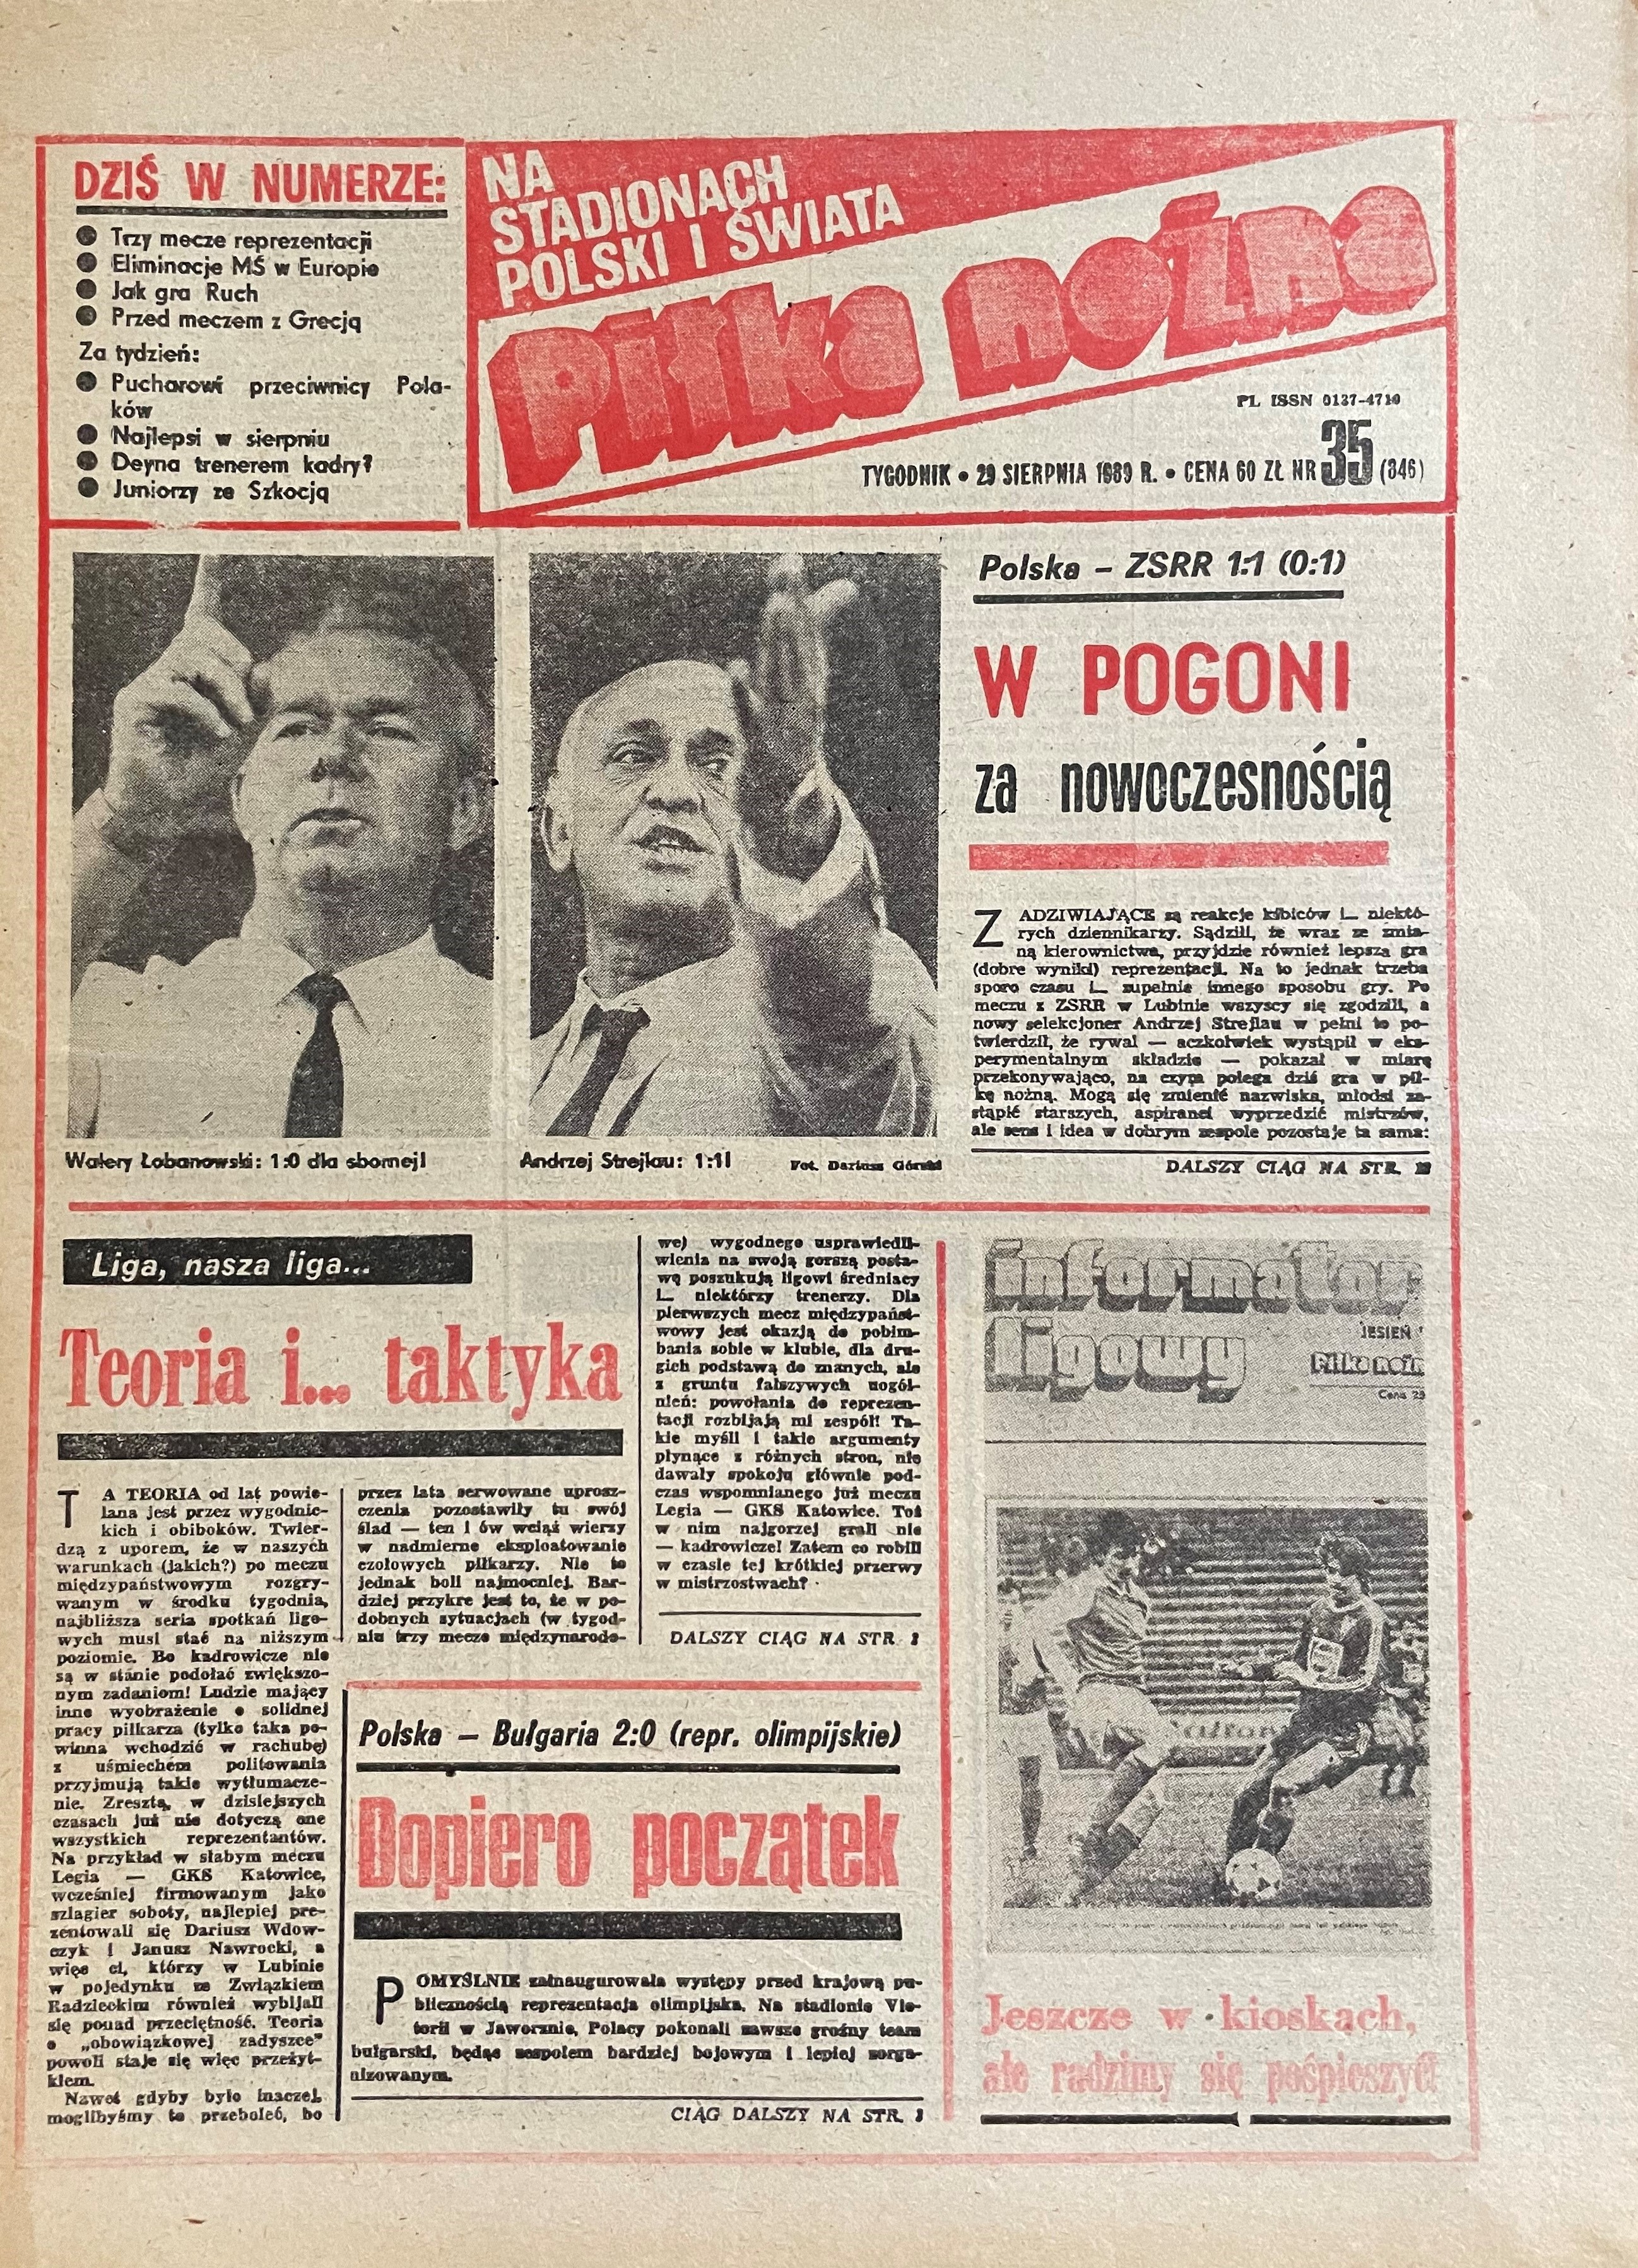 Piłka Nożna po meczu Polska - ZSRR 1:1 (23.08.1989)